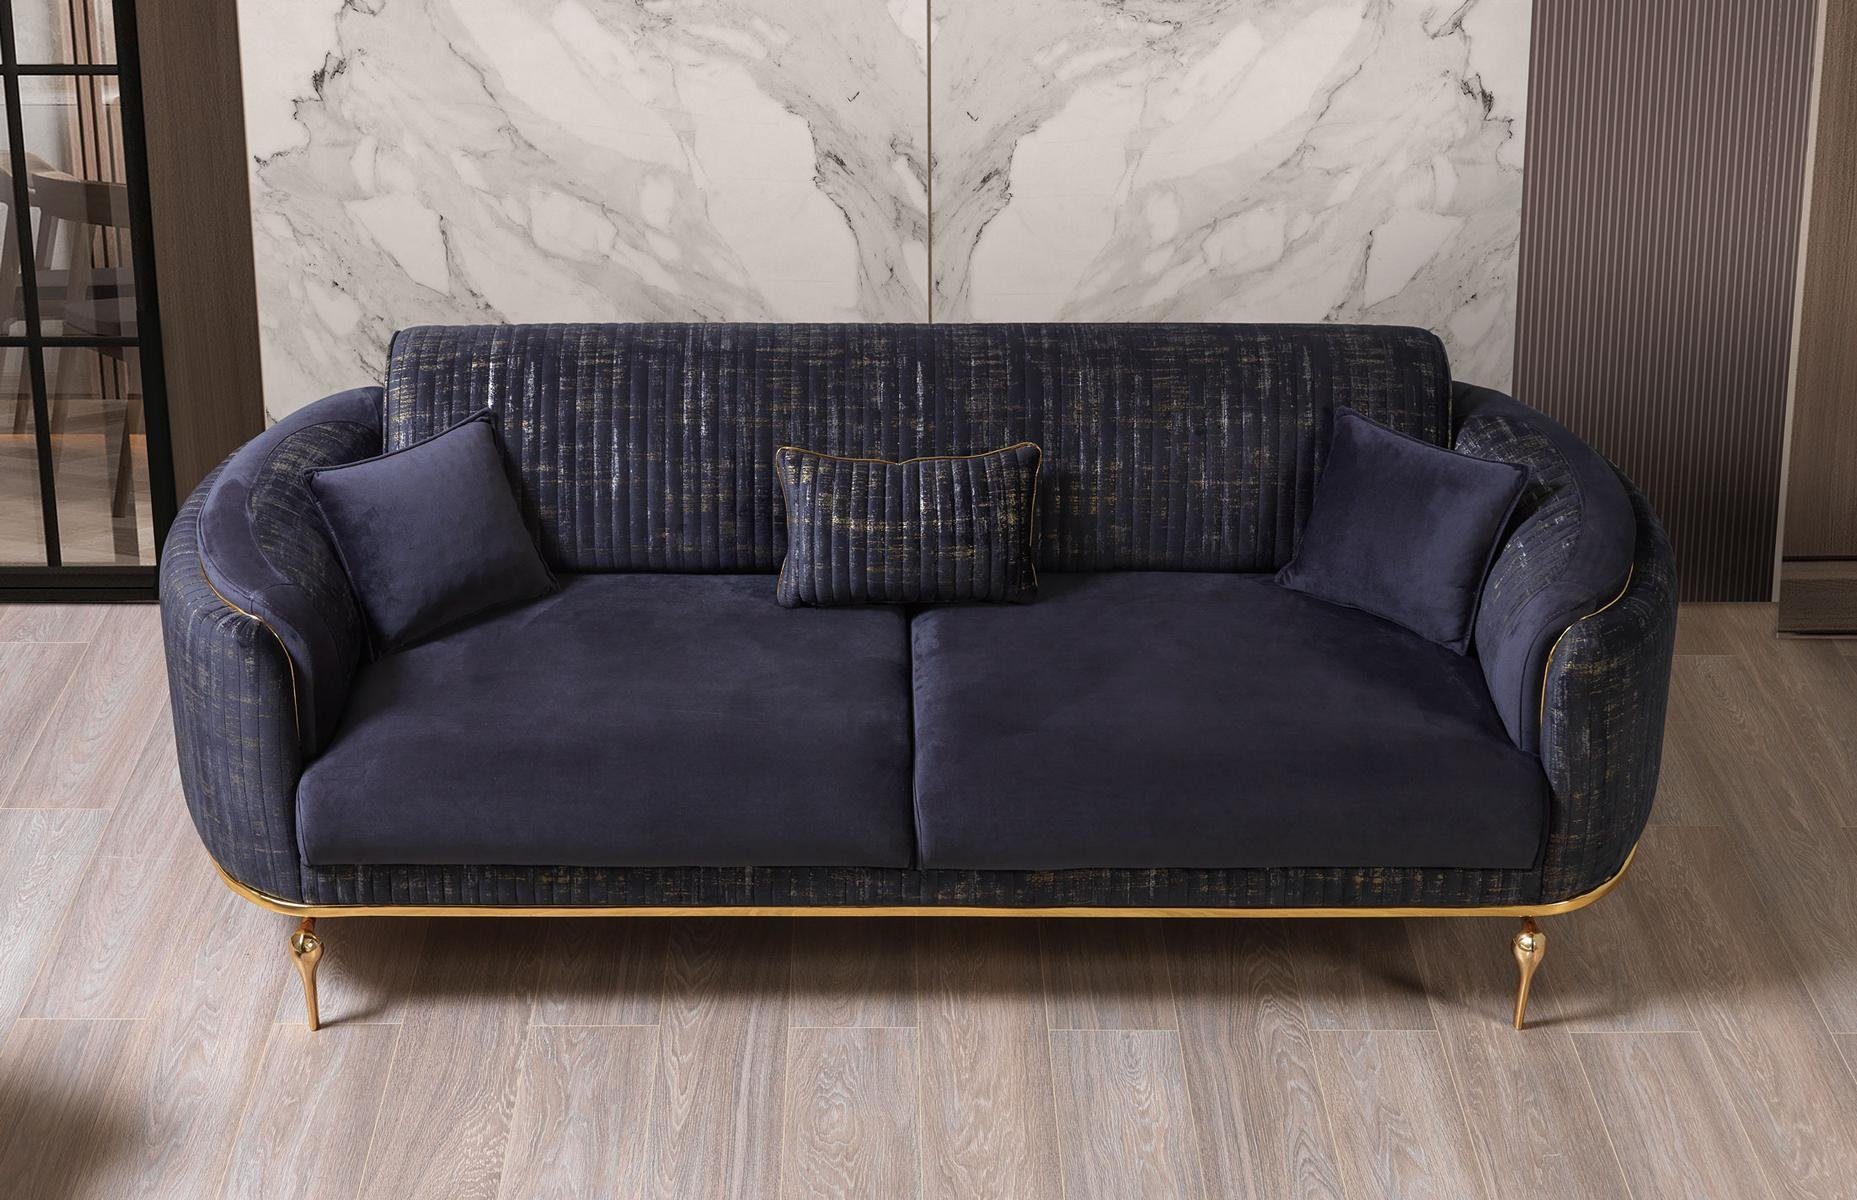 JVmoebel 3-Sitzer Luxus Sofa 3 Sitzer Wohnzimmer Blau Modernes reisitzer Möbel, Made in Europe Dunkelblau